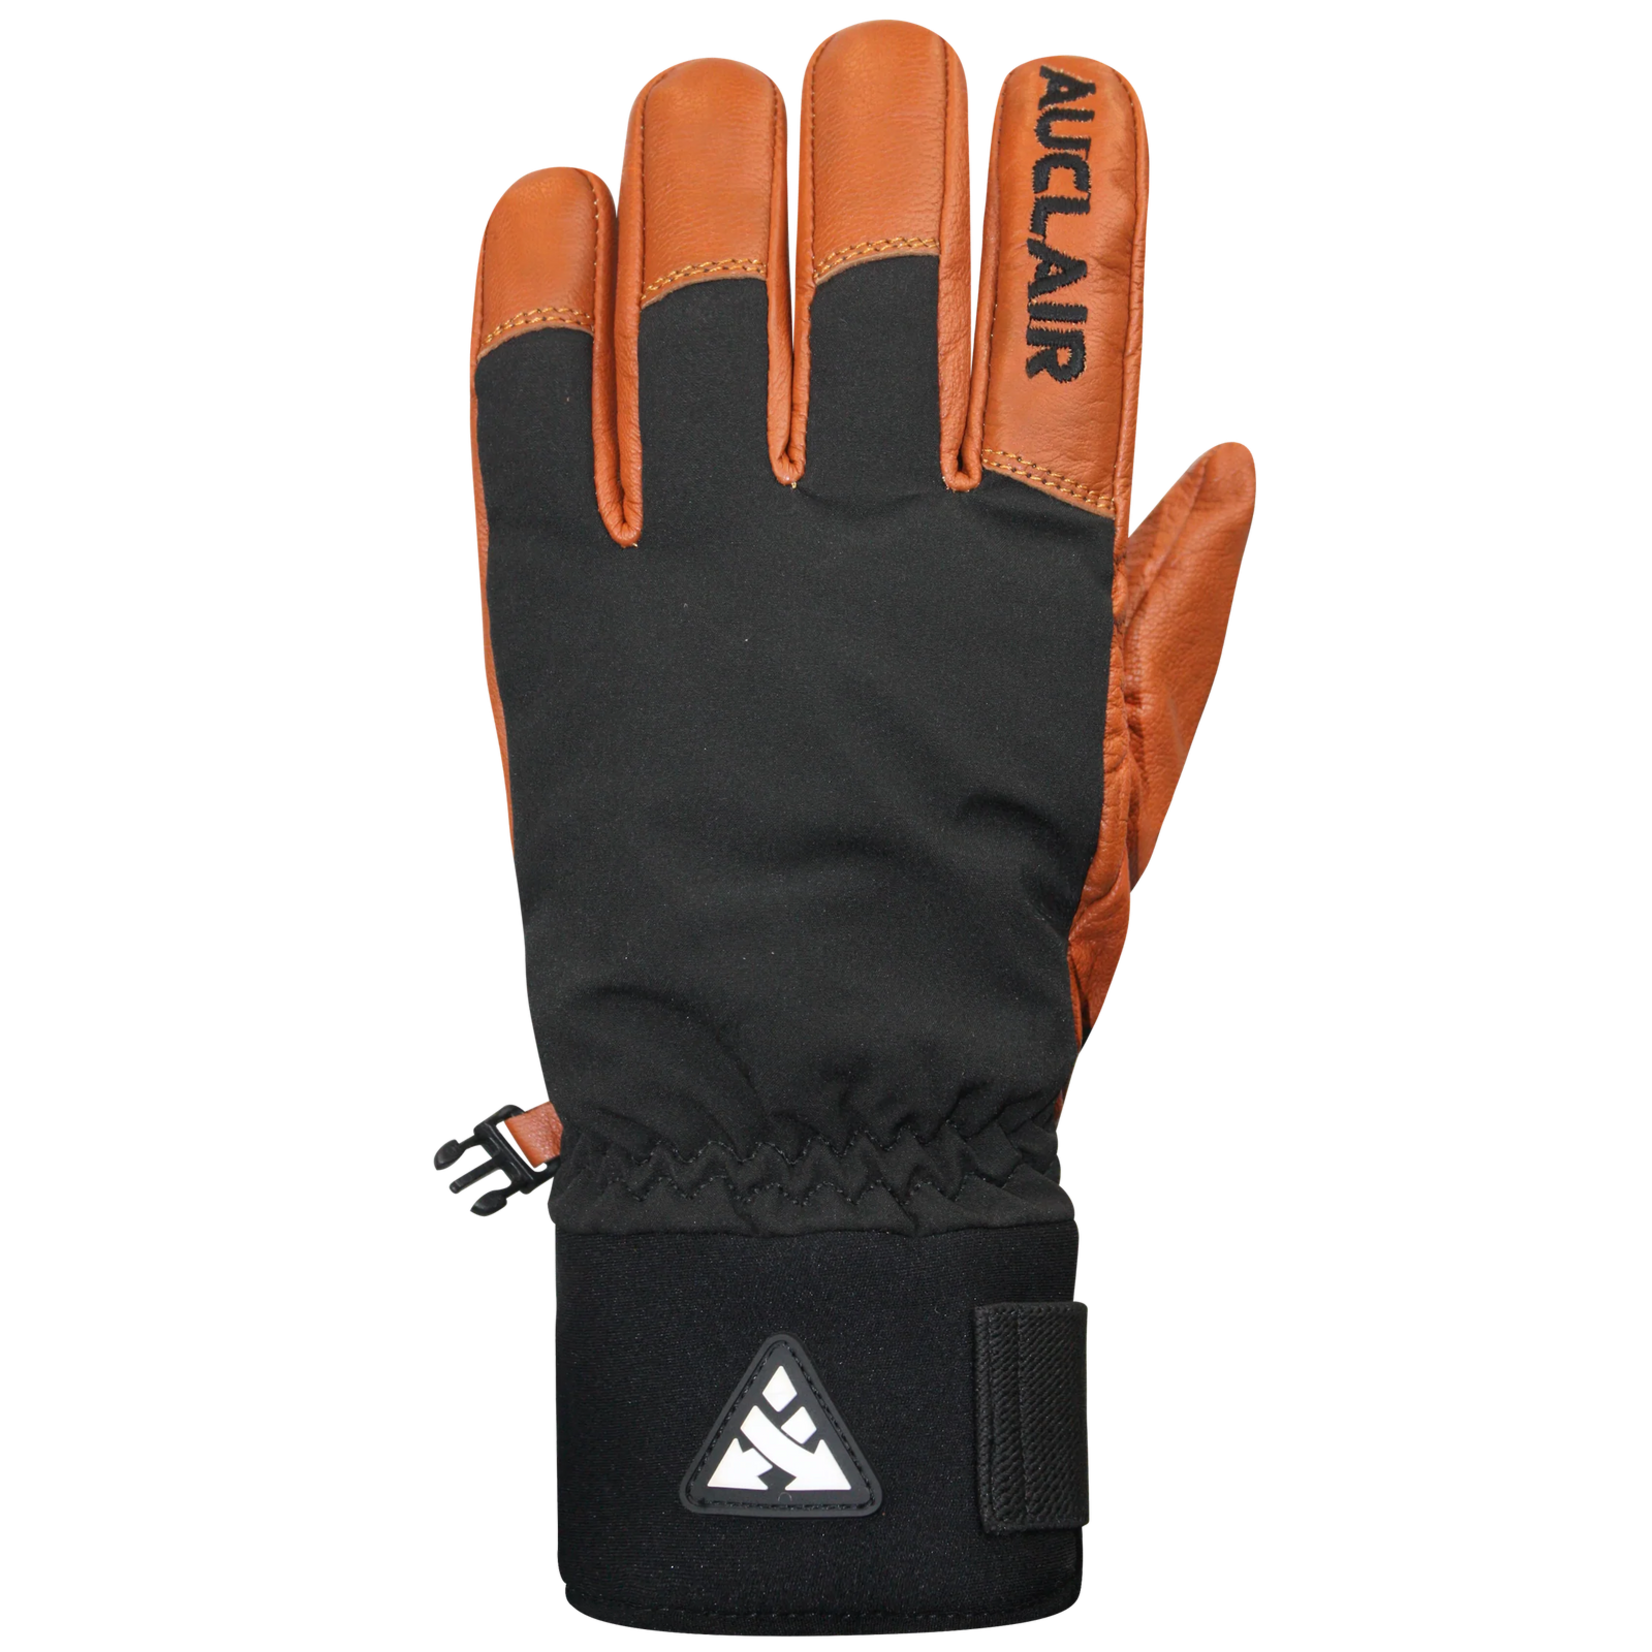 Auclair Auclair Team Worker II Glove Men's